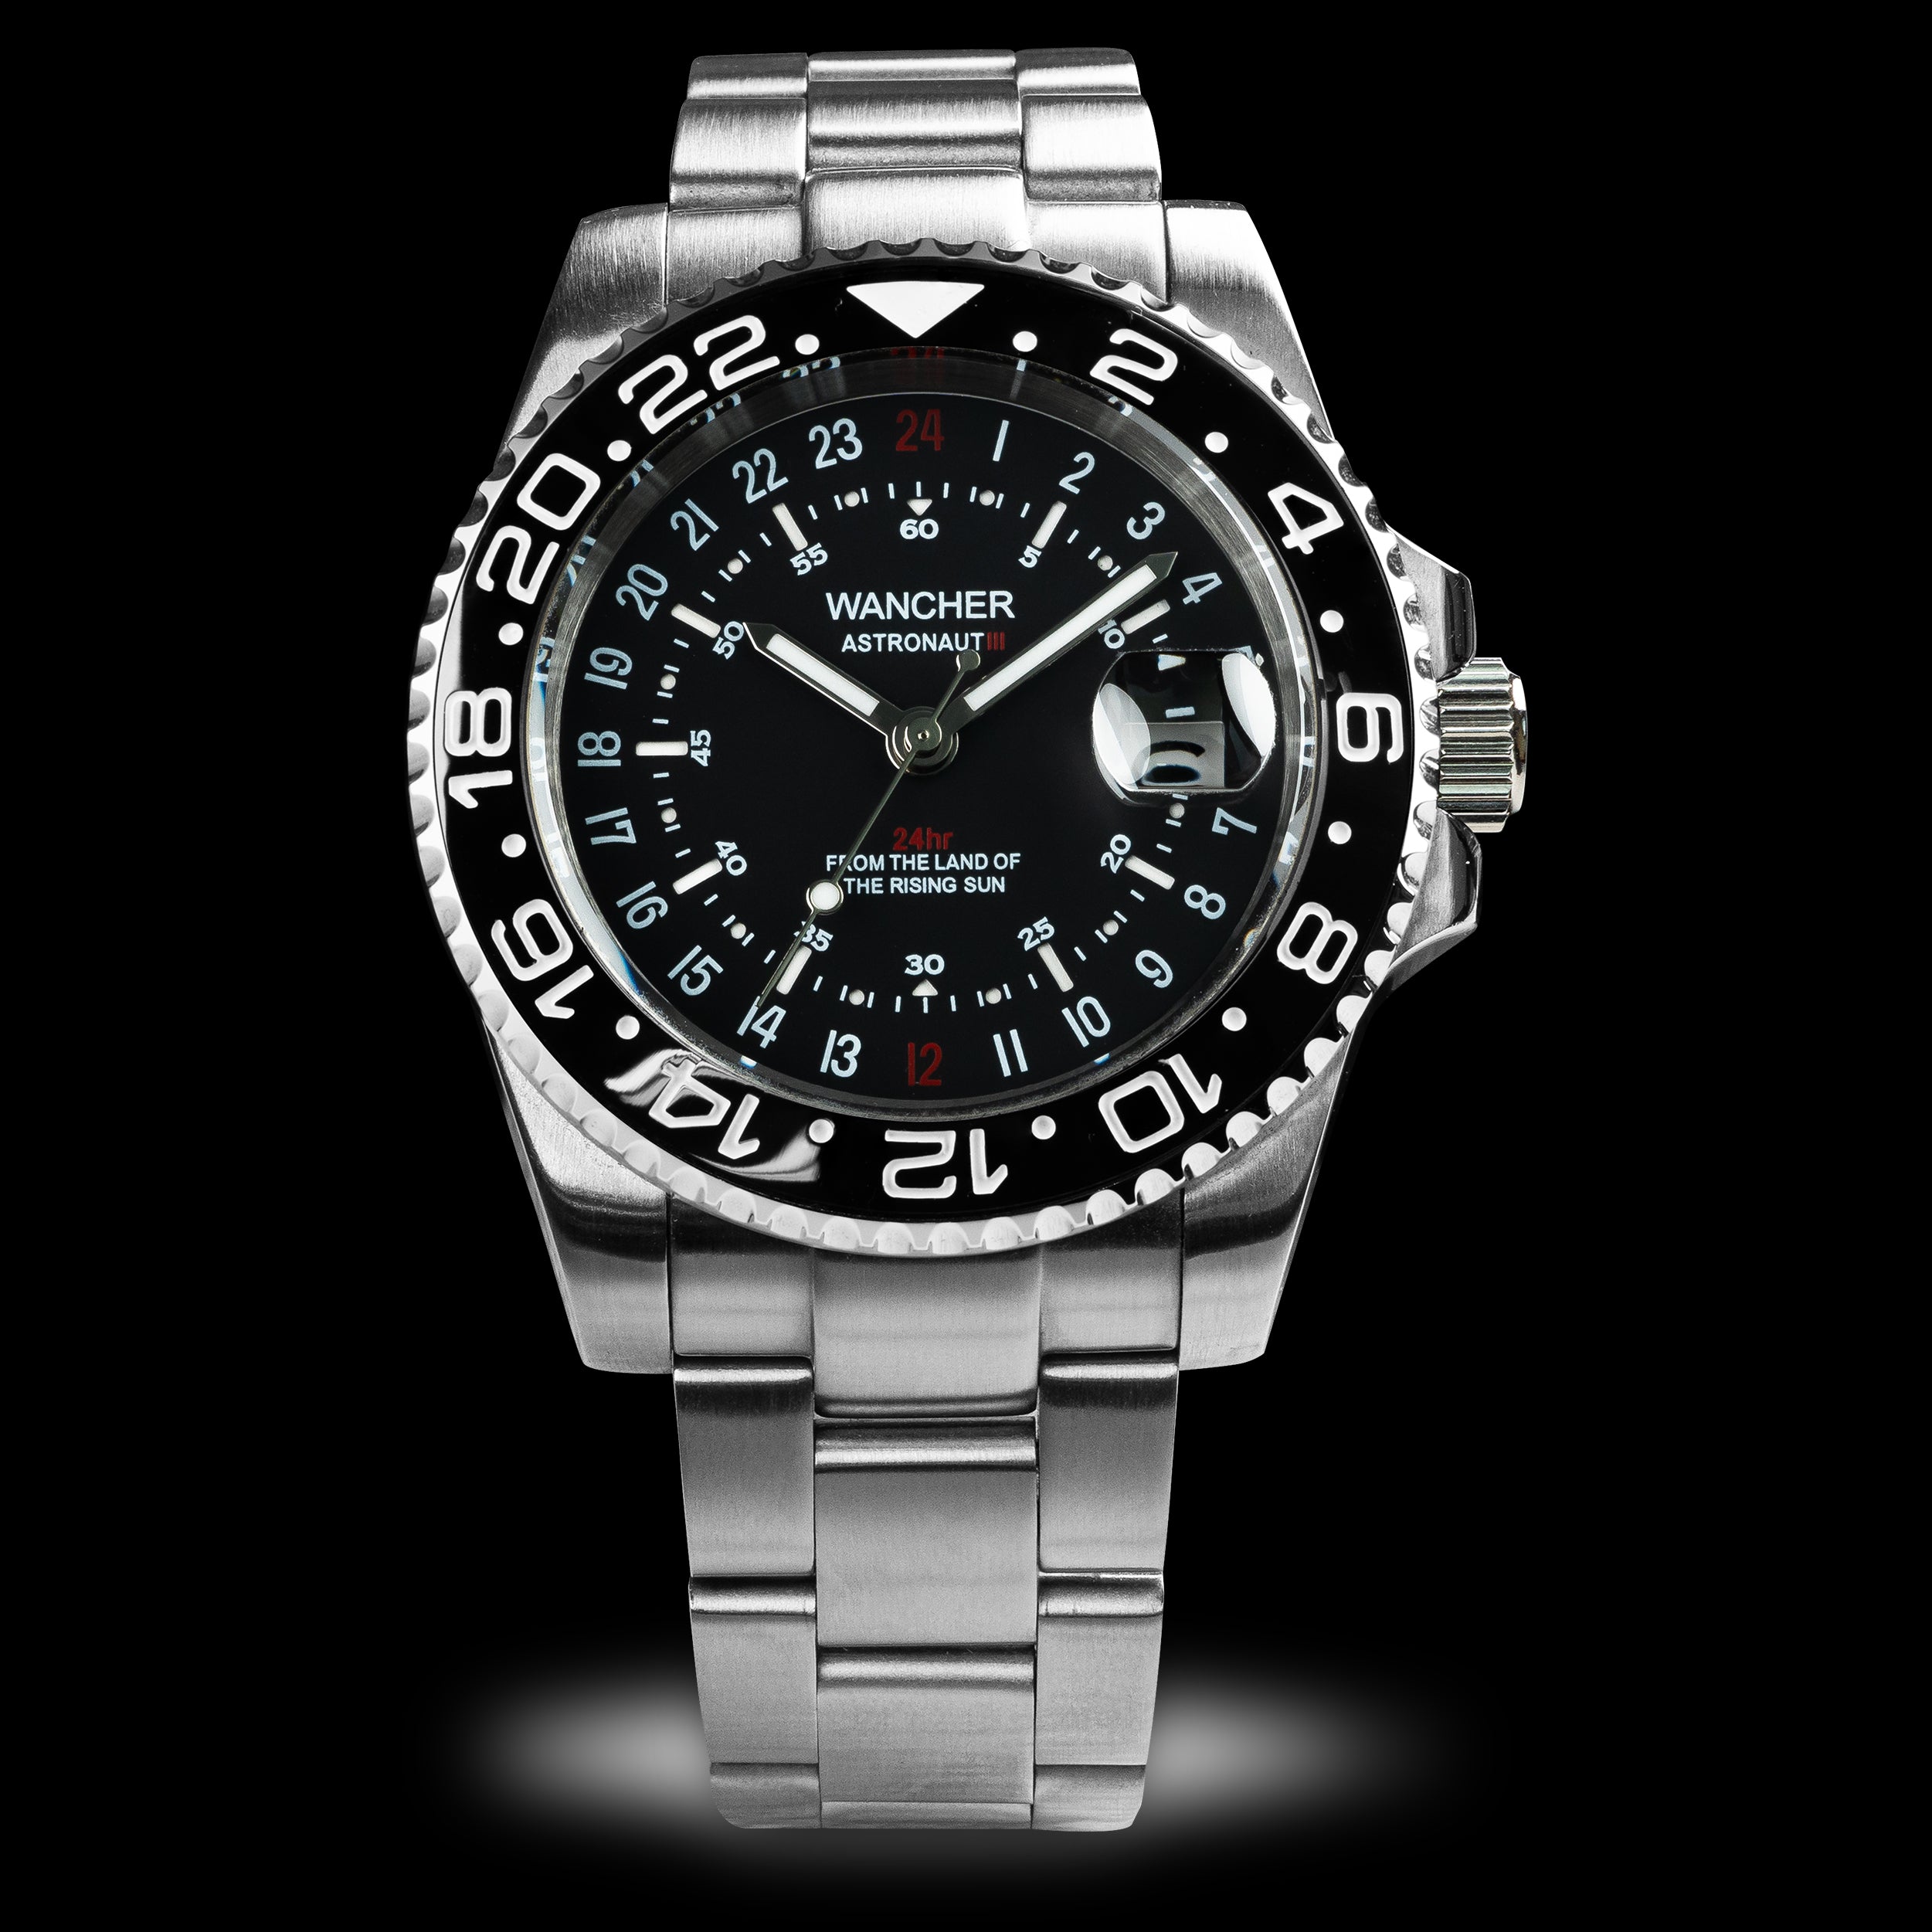 Wancher Astronaut 3 GMT Bezel Automatic Watch 